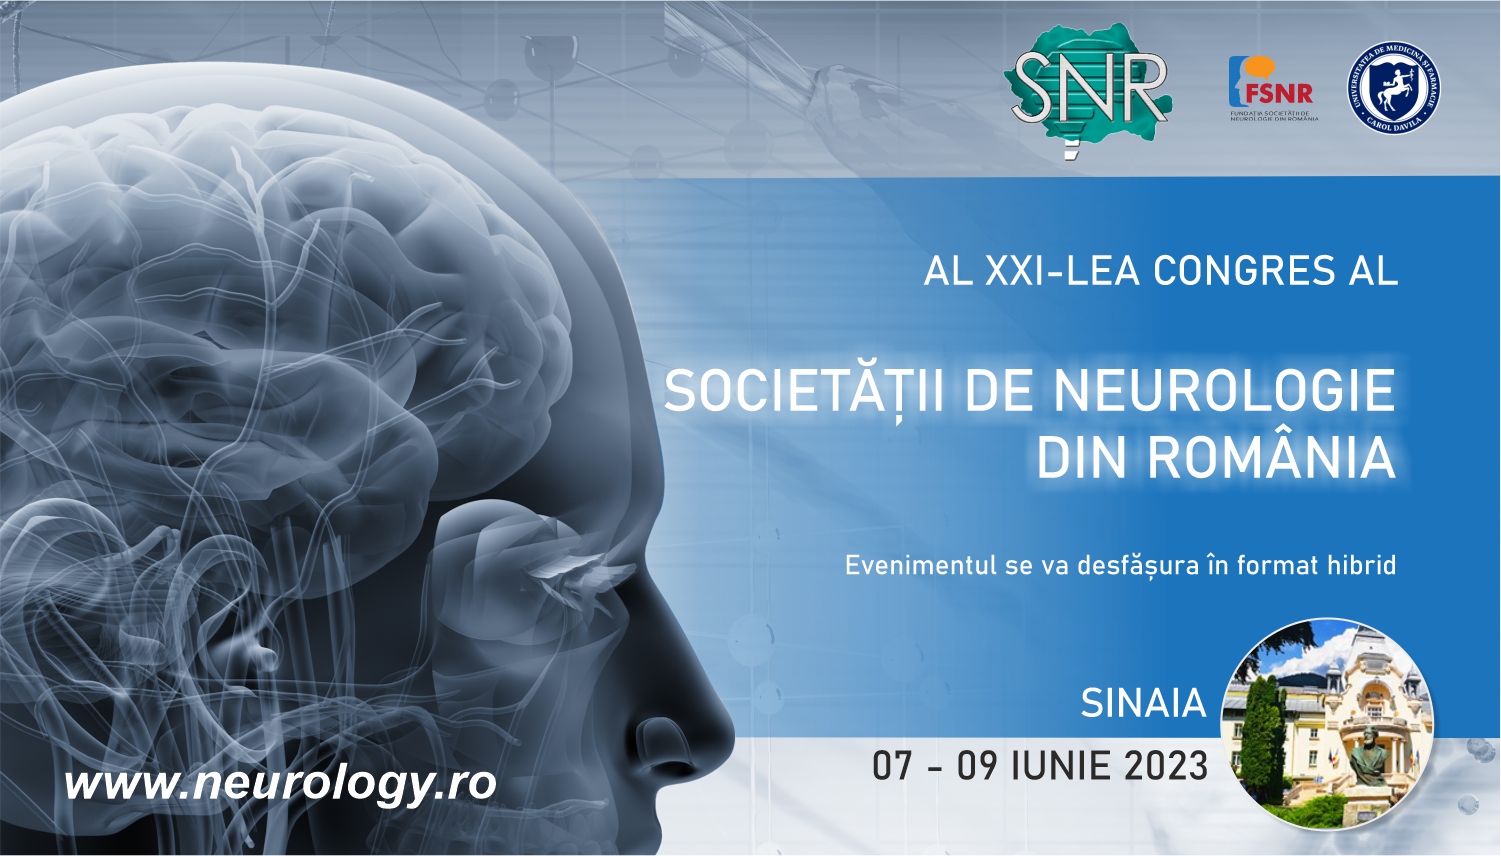 Site-ul celui de-al XXI-lea Congres al Societatii de Neurologie din Romania